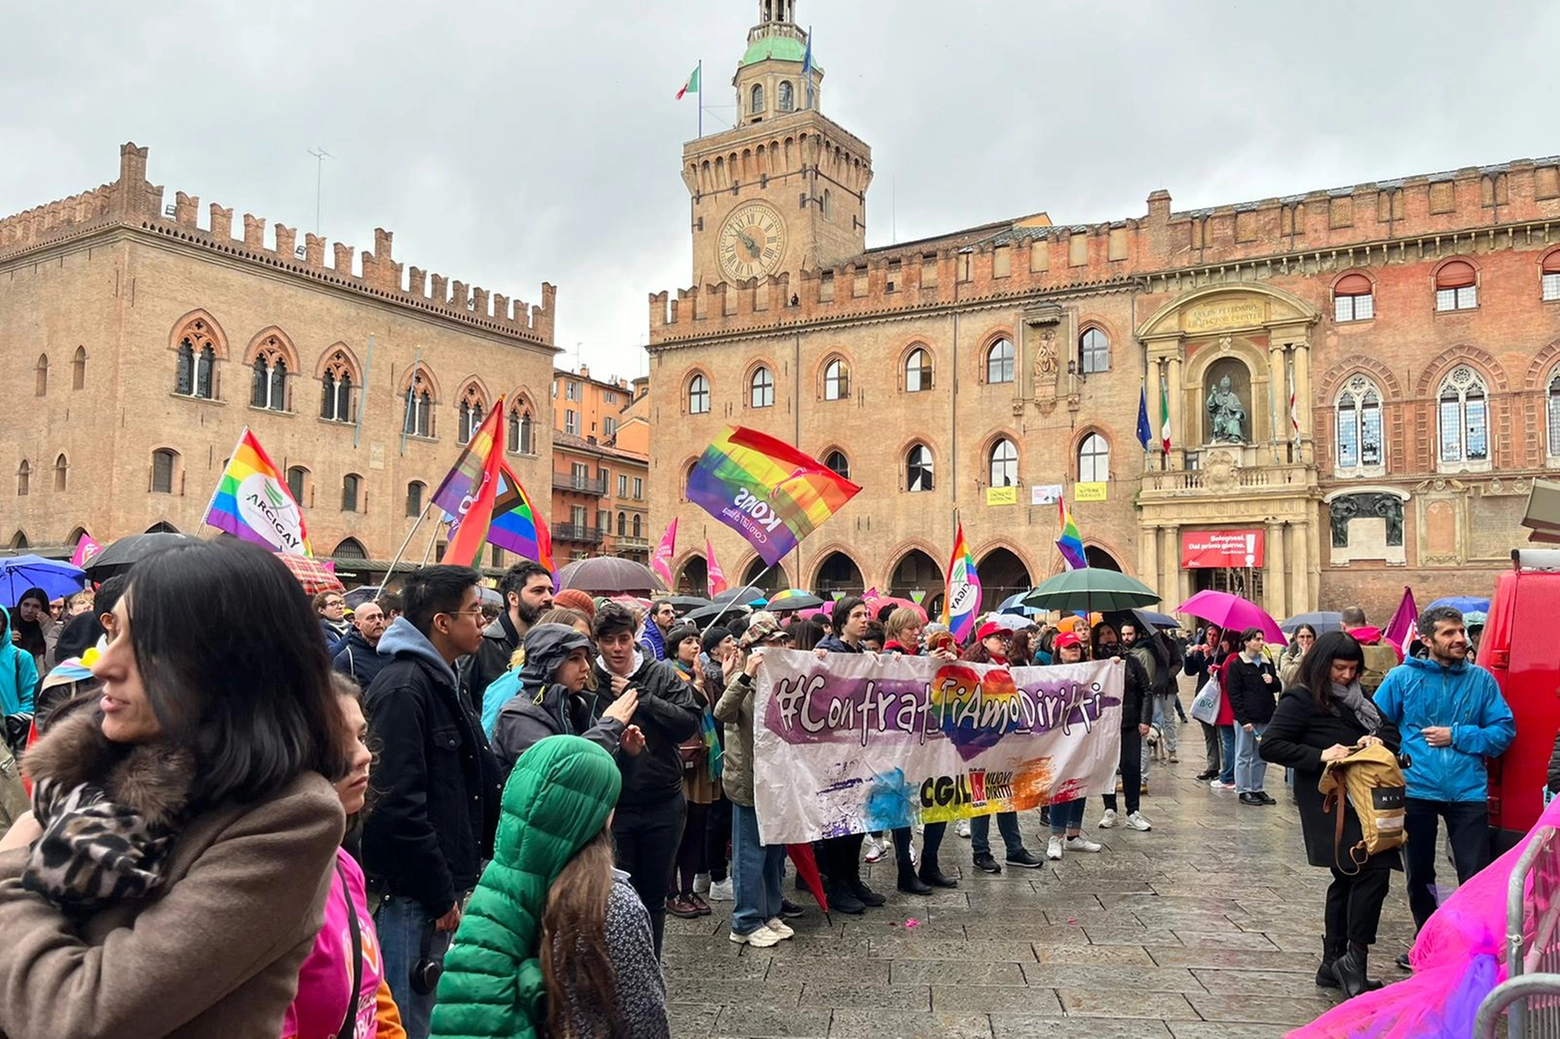 La protesta con striscioni in piazza Maggiore a Bologna